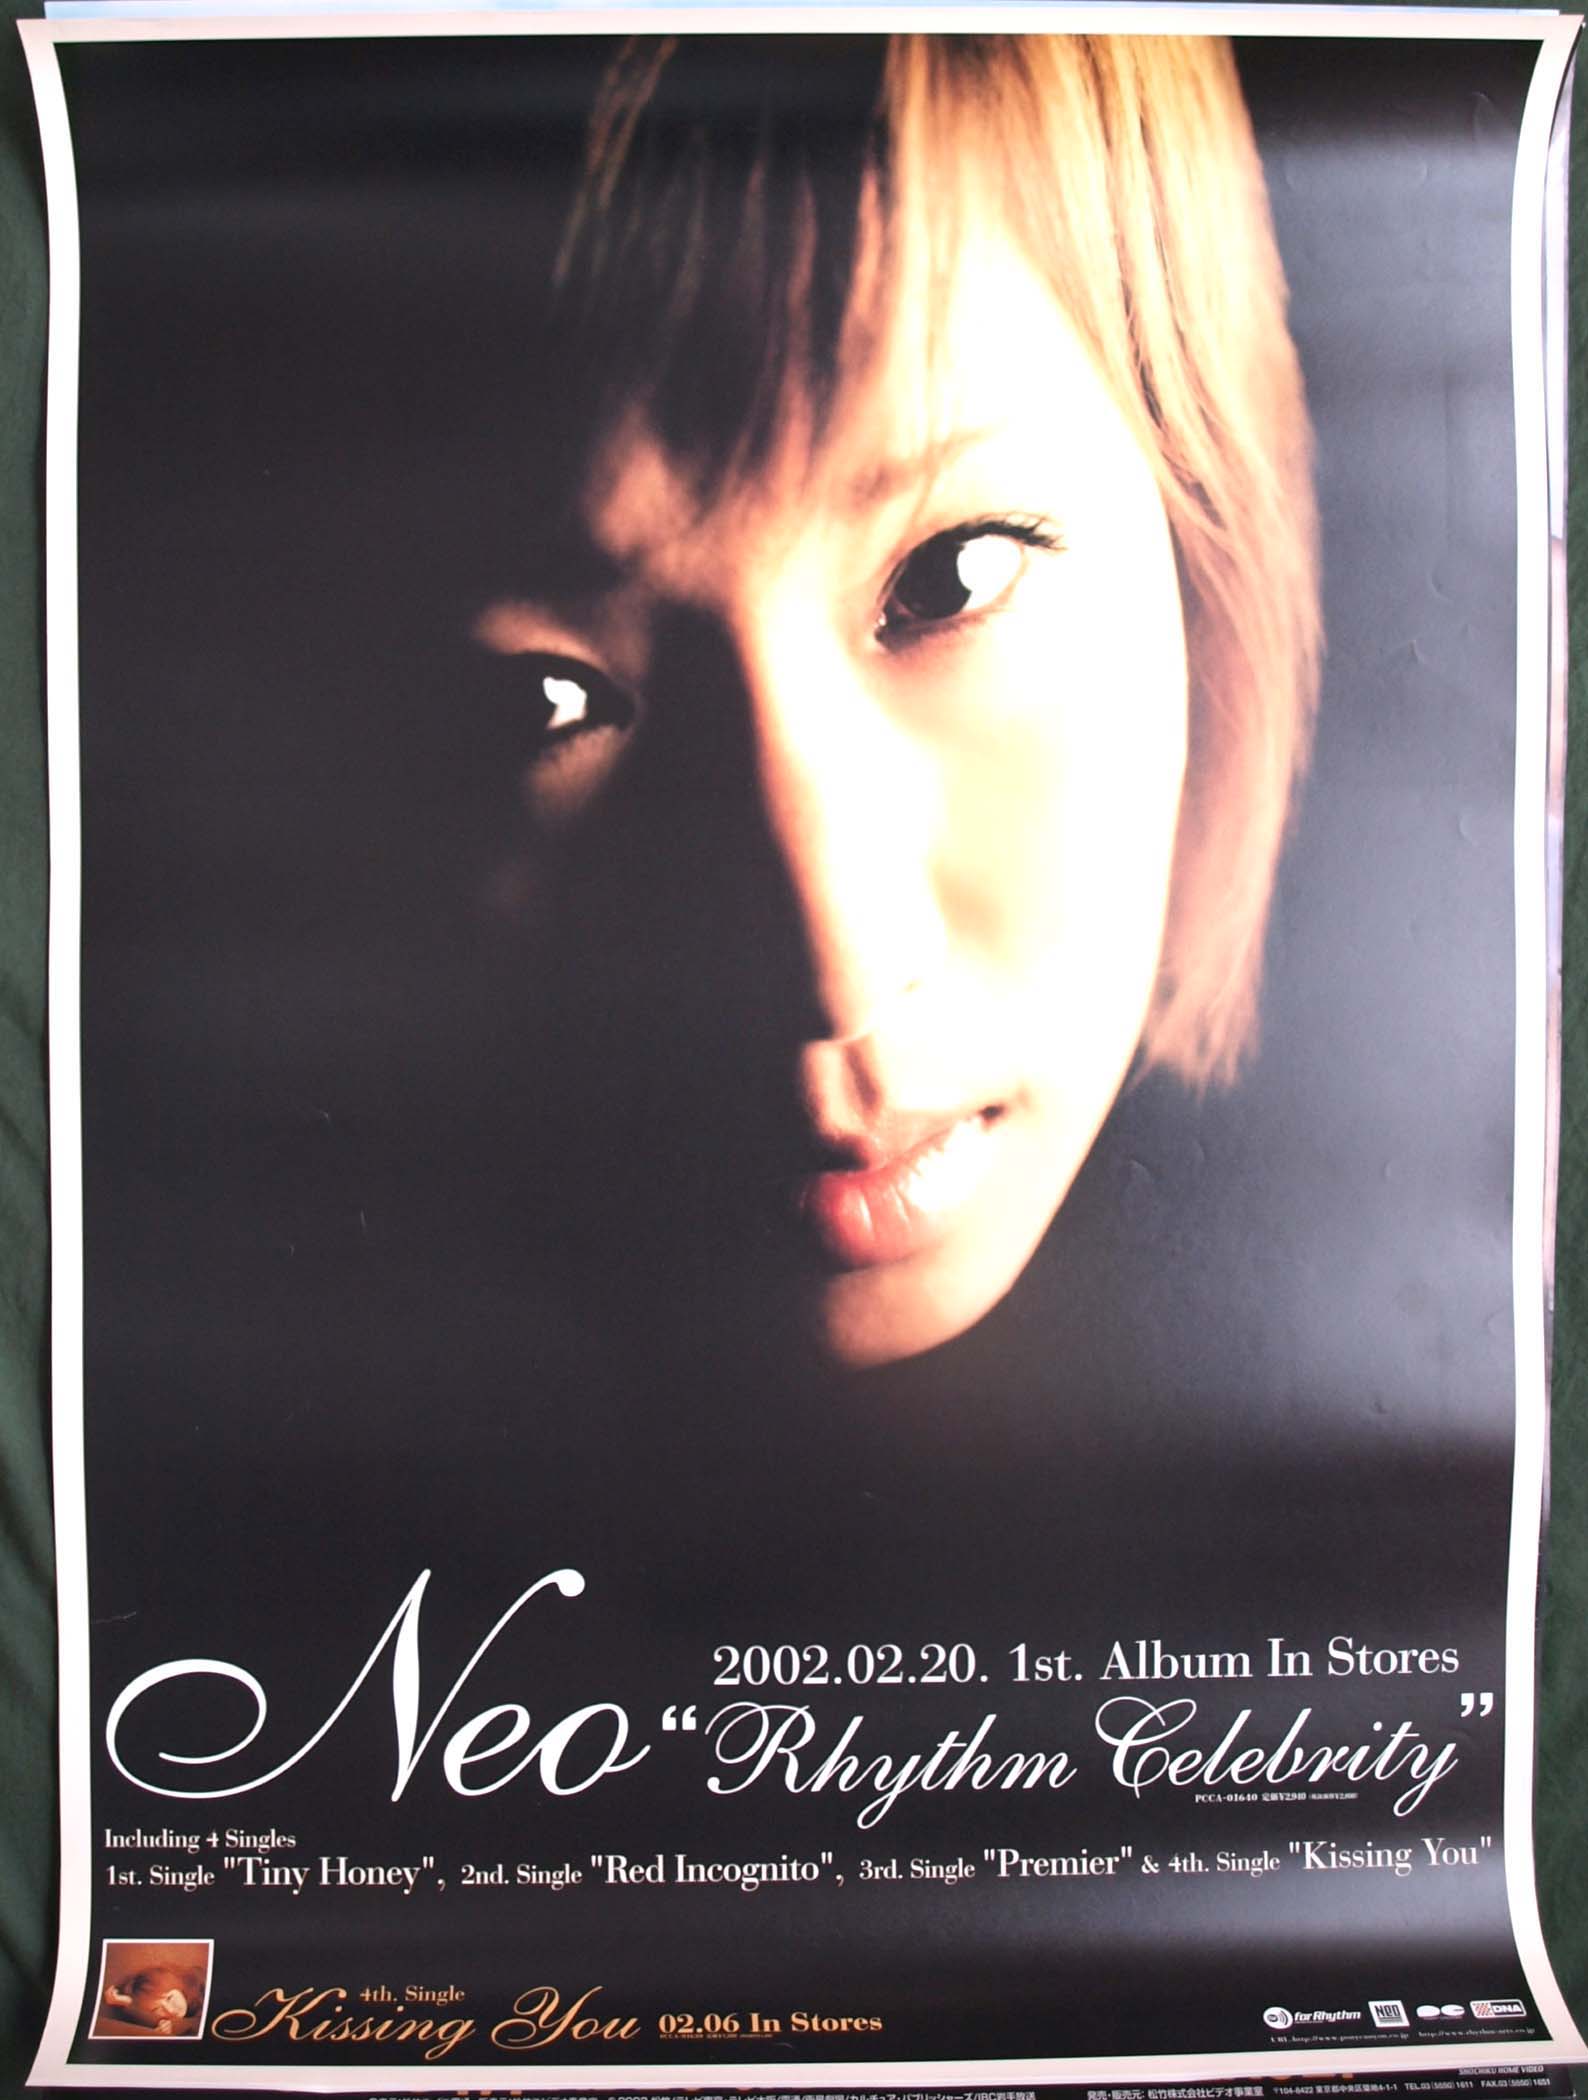 Neo 「Rhythm Celebrity」のポスター